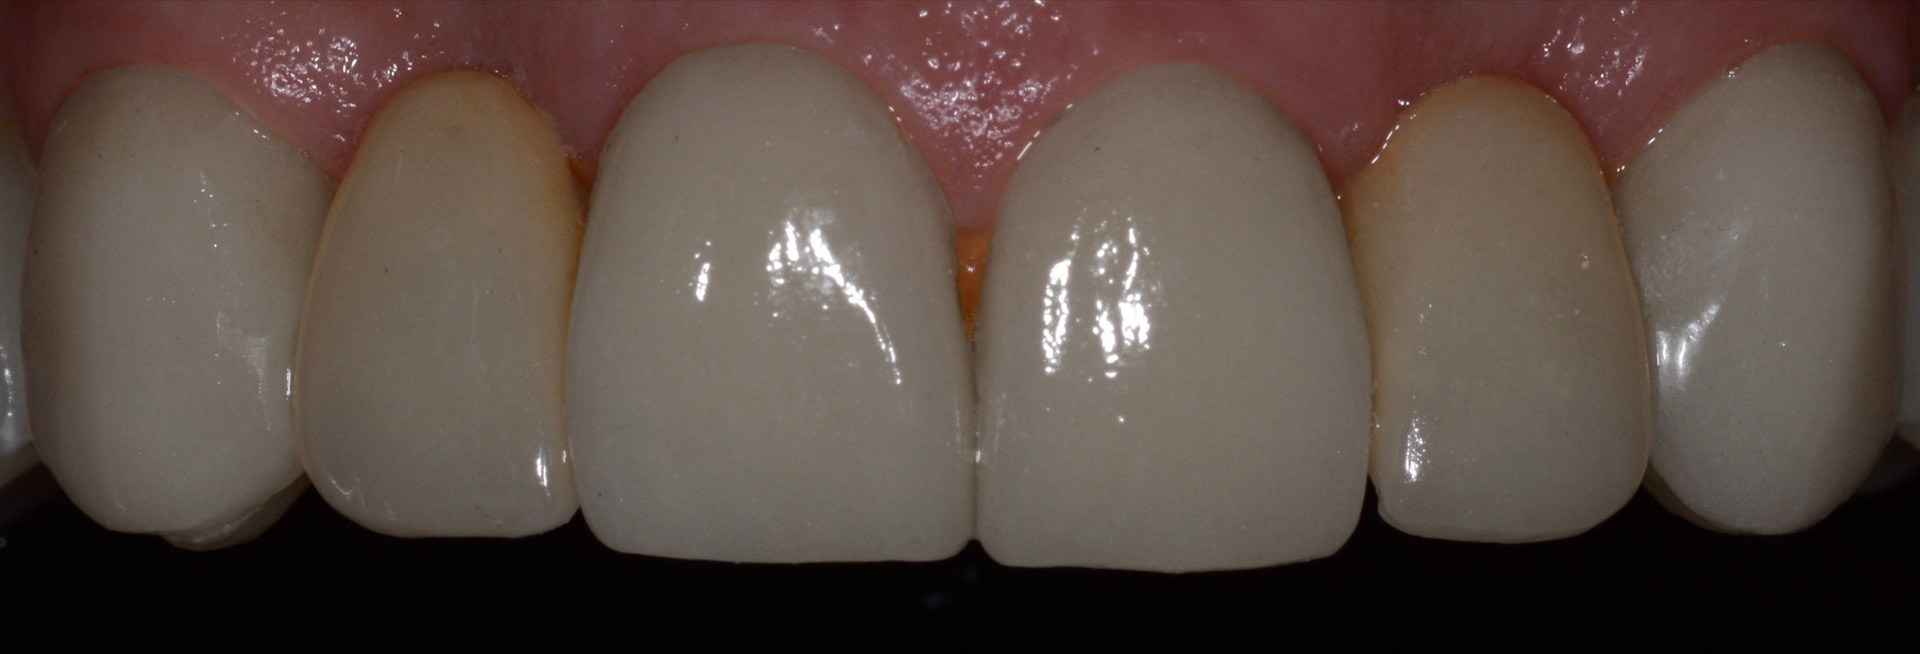 Τελική κατάσταση - Πρόσθια άποψη των αποκαταστάσεων της άνω γνάθου, τοποθετημένες στο στόμα